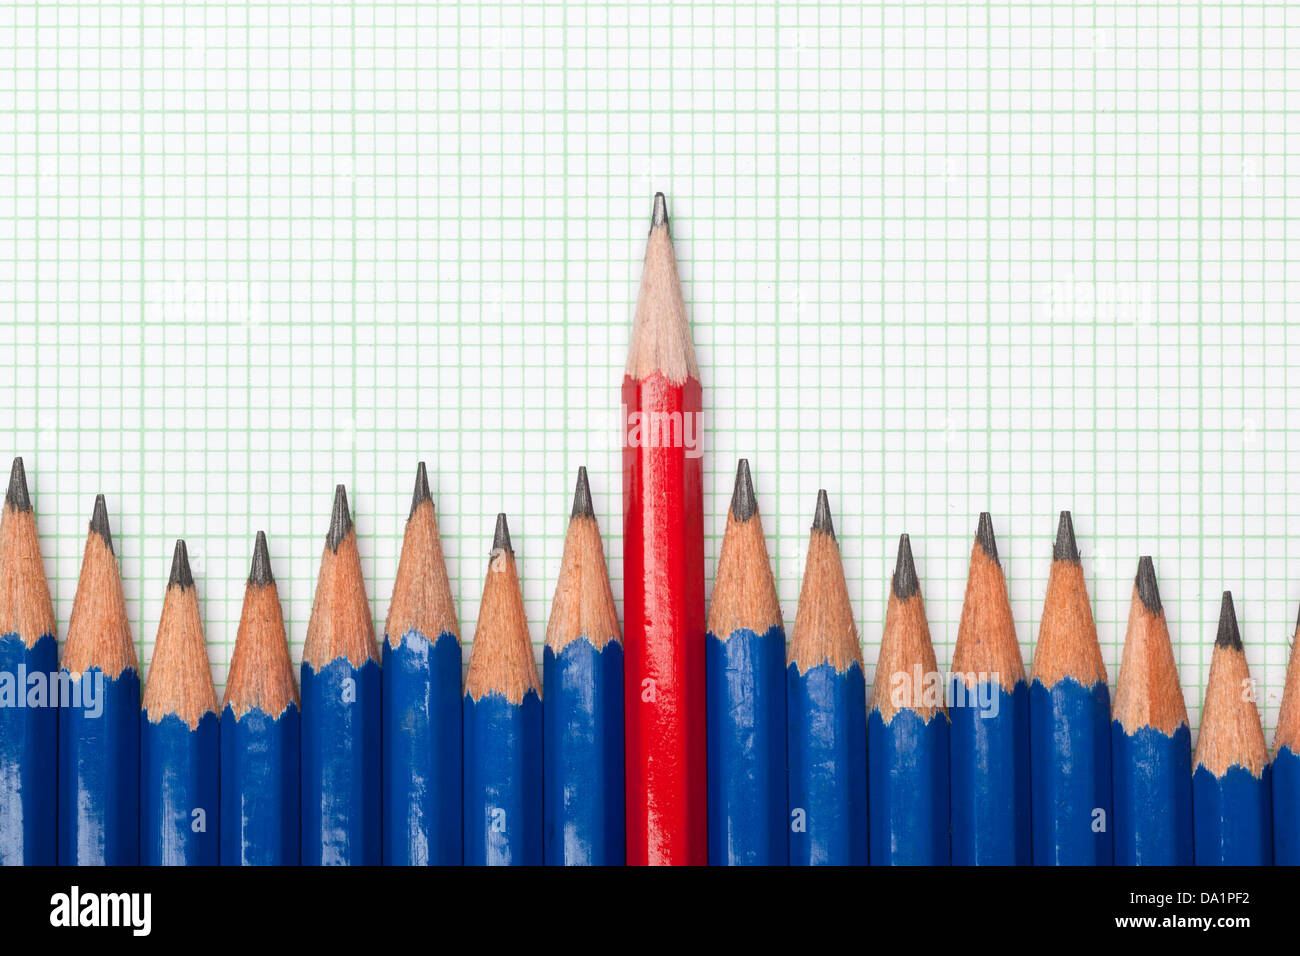 Lápiz rojo que sobresalían desde una fila de lápices de color azul sobre un trozo de papel milimetrado Foto de stock